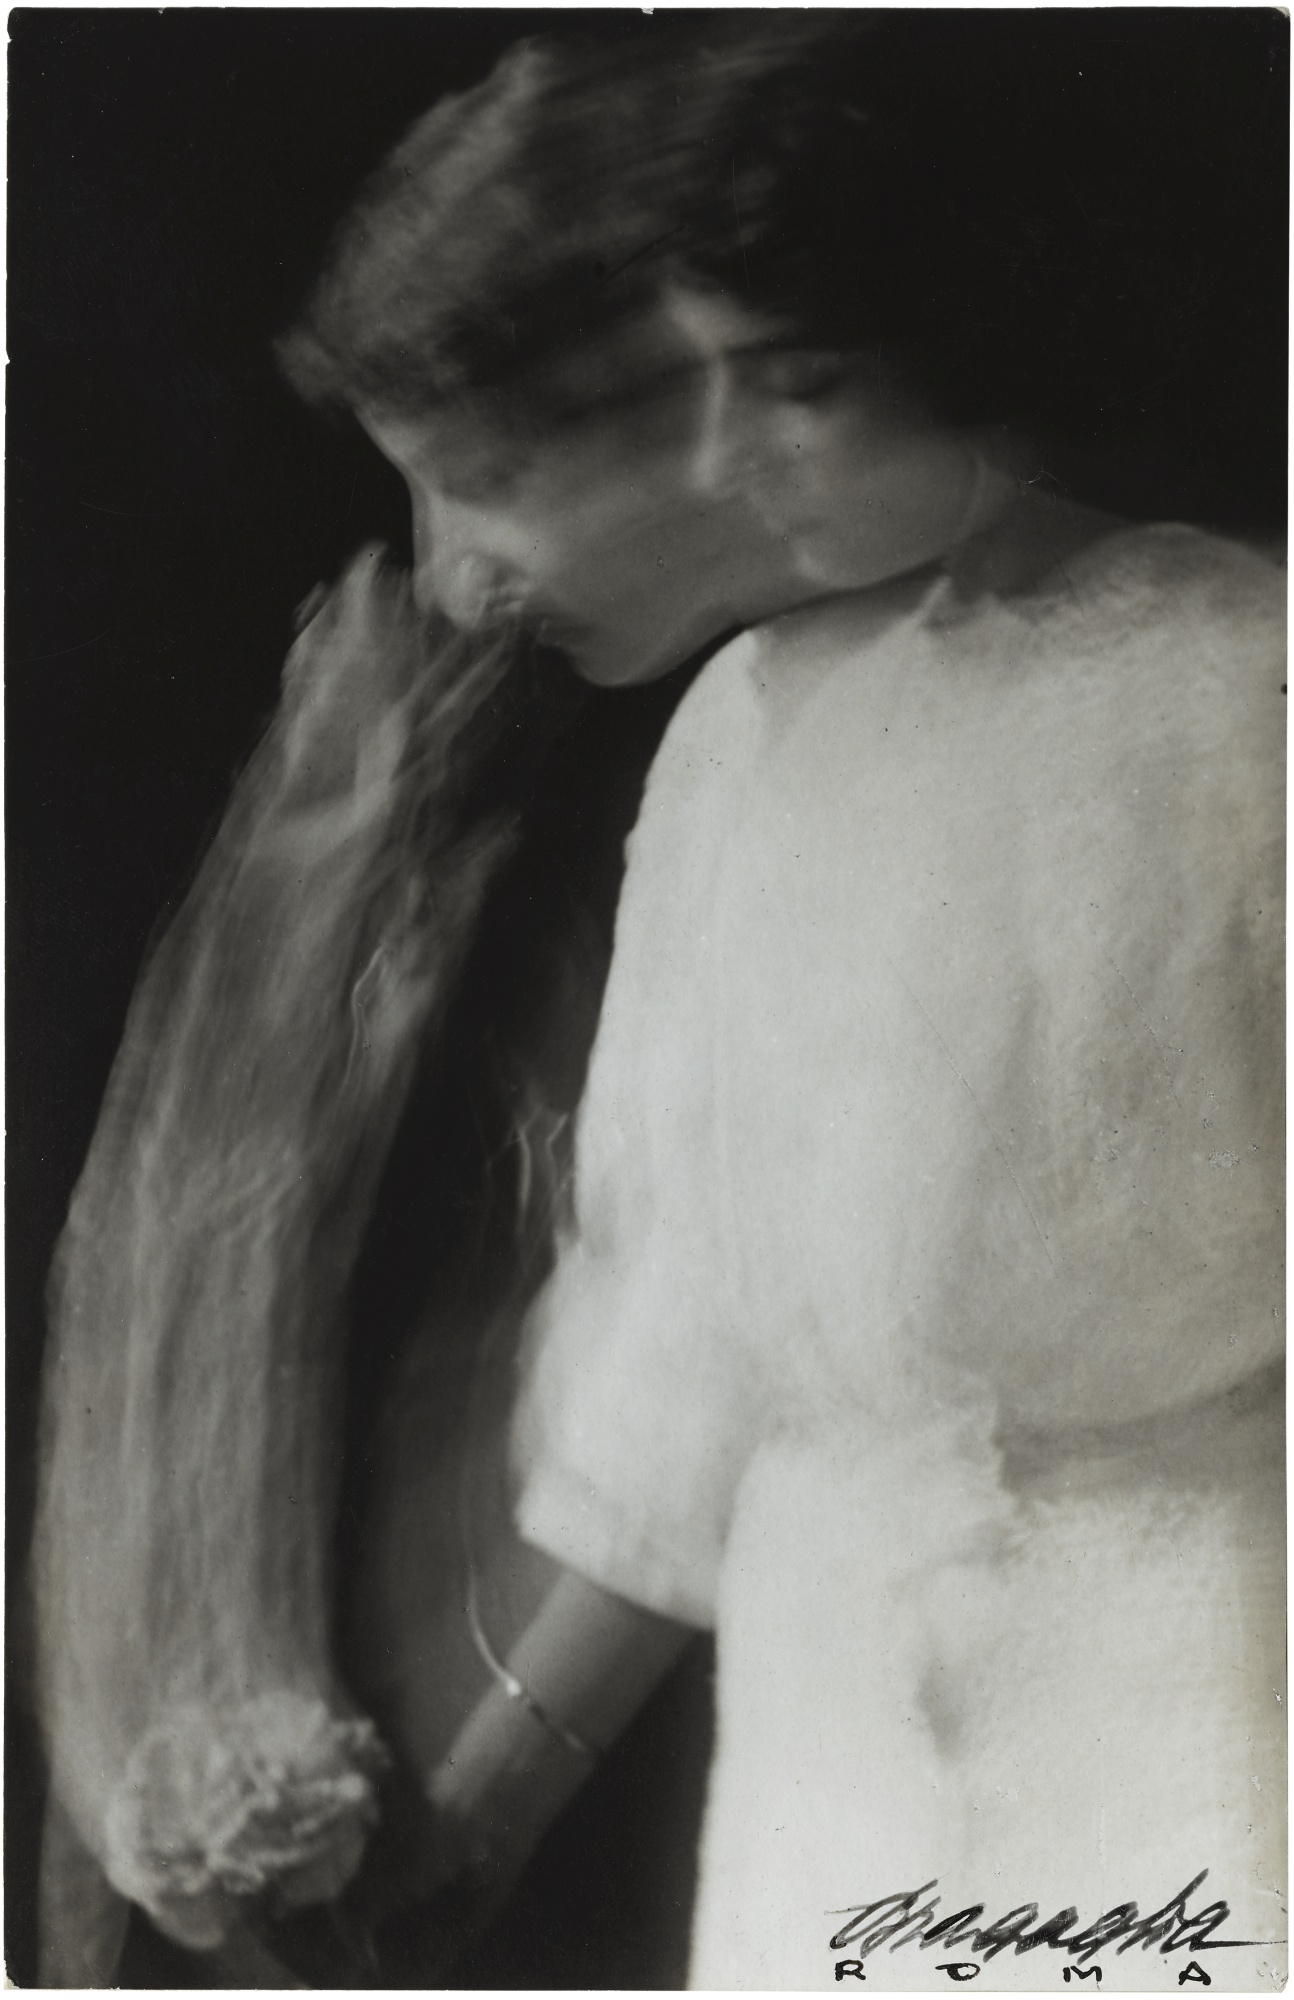 'LE ROSE' by Anton Giulio Bragaglia, Arturo Bragaglia, 1913